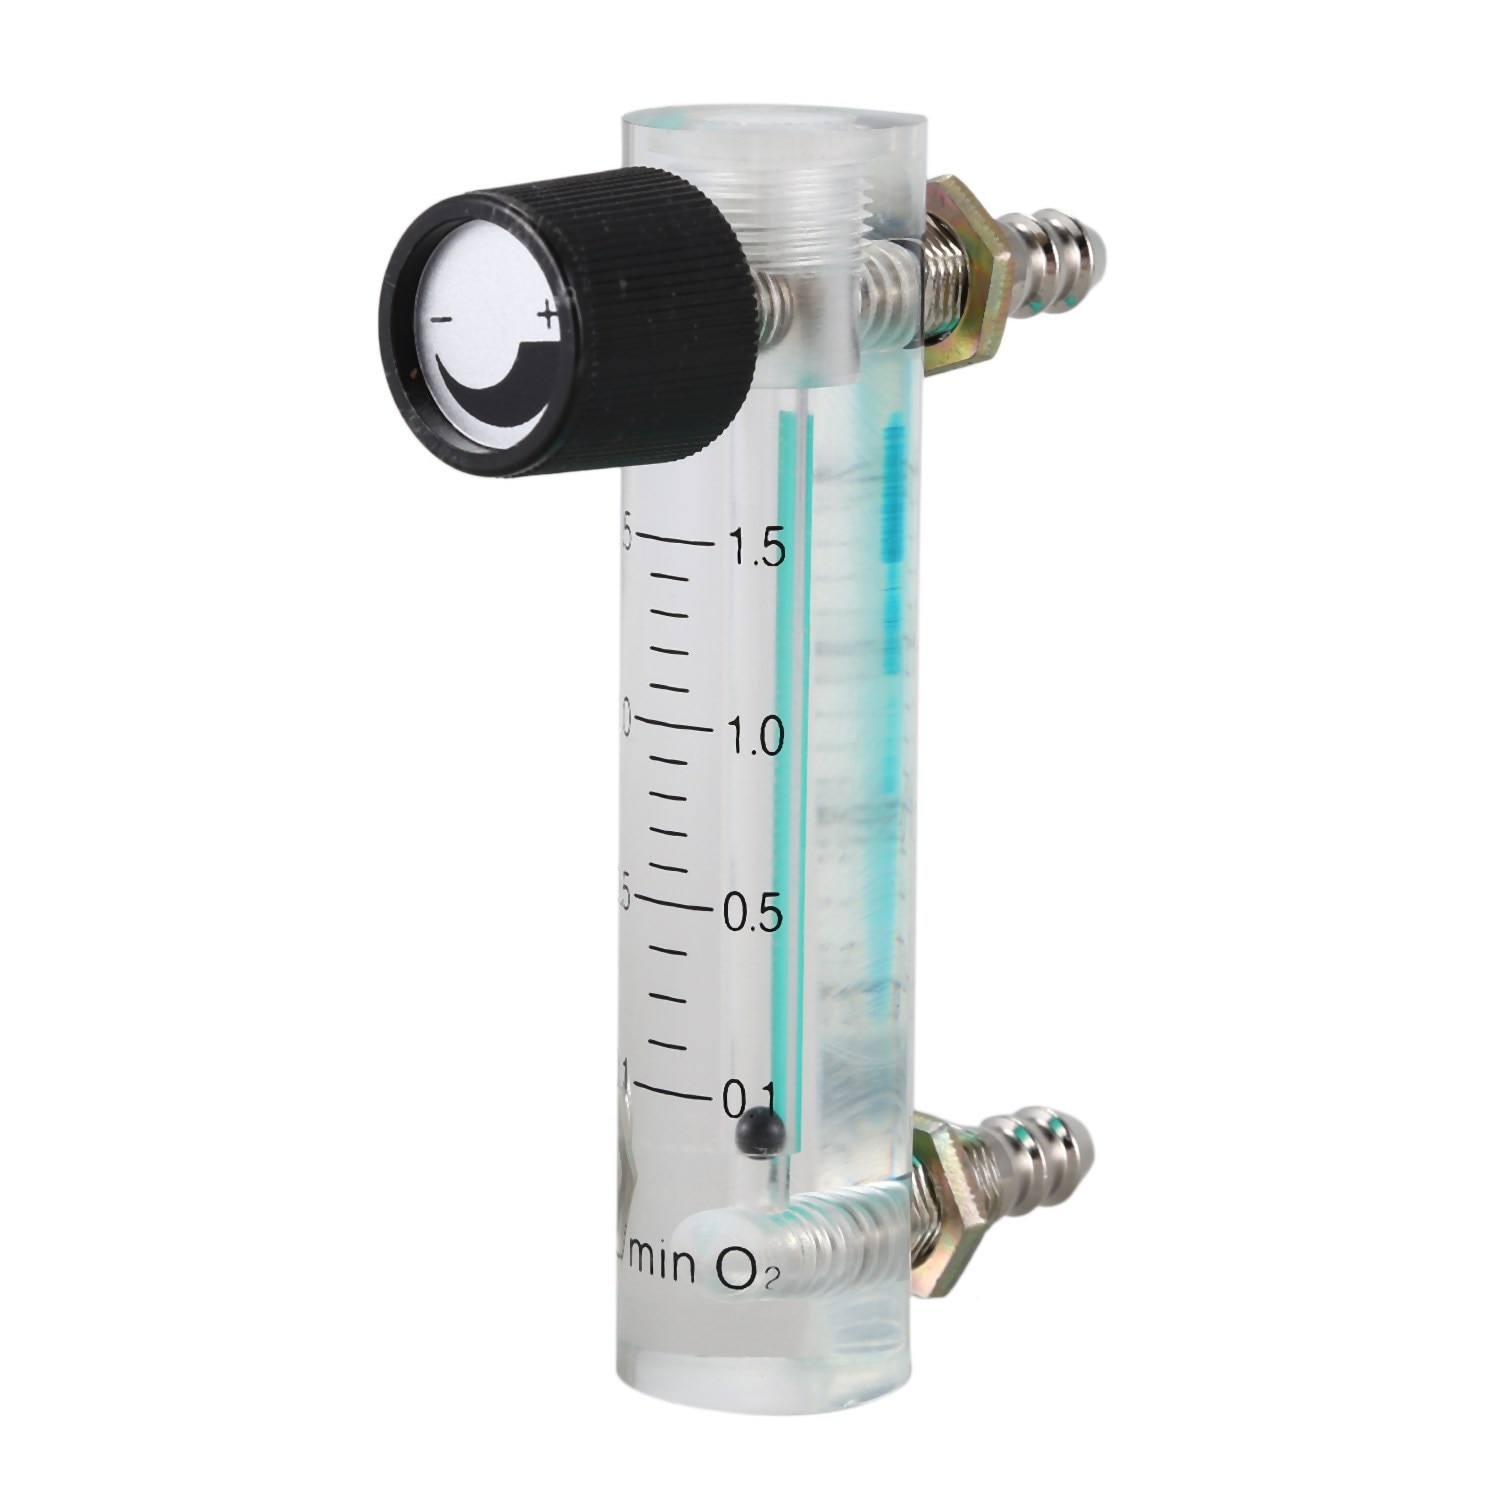 0.1-1.5LPM 1.5L Silicon Rubber Zuurstof Flowmeter Flowmeter Met Regelklep Voor Zuurstof Lucht Gas